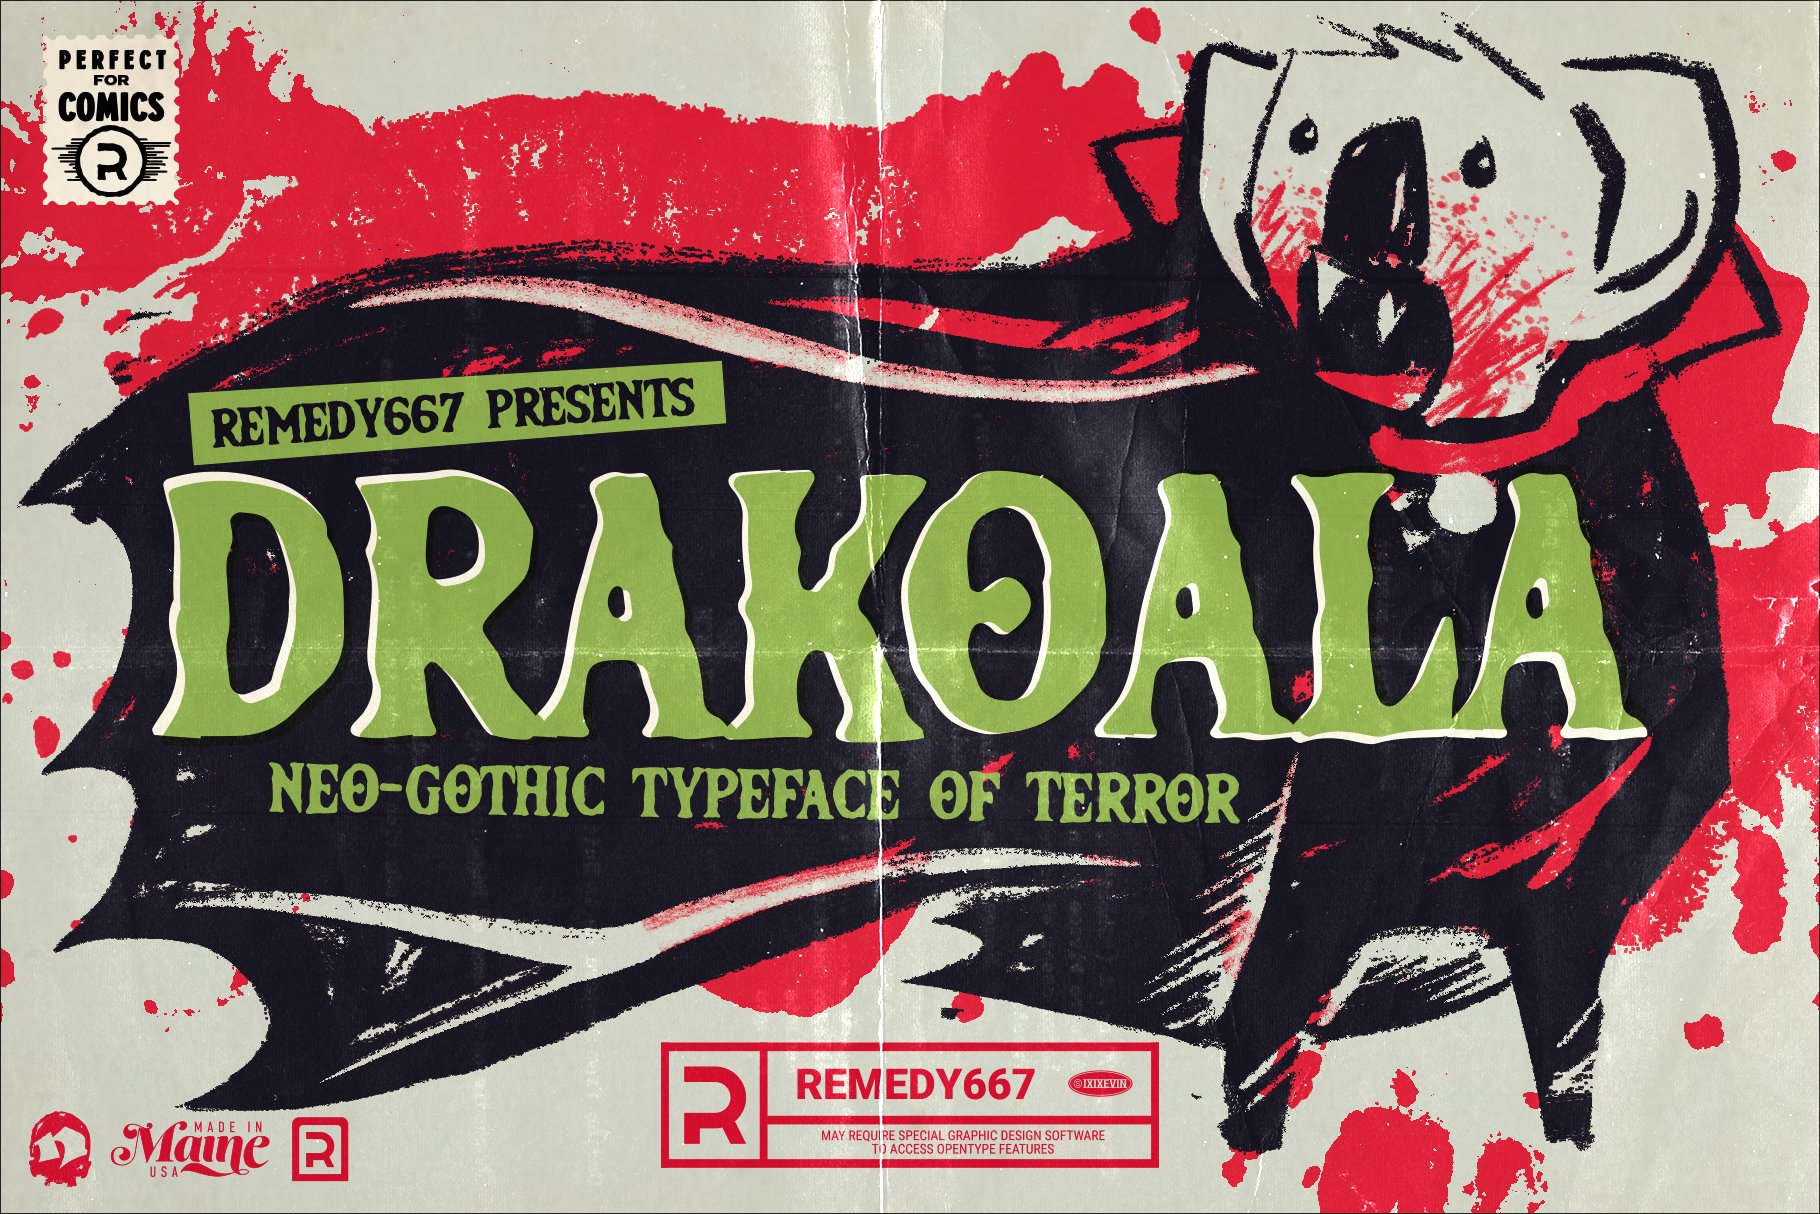 Drakoala – Neo-Gothic Horror Font cover image.